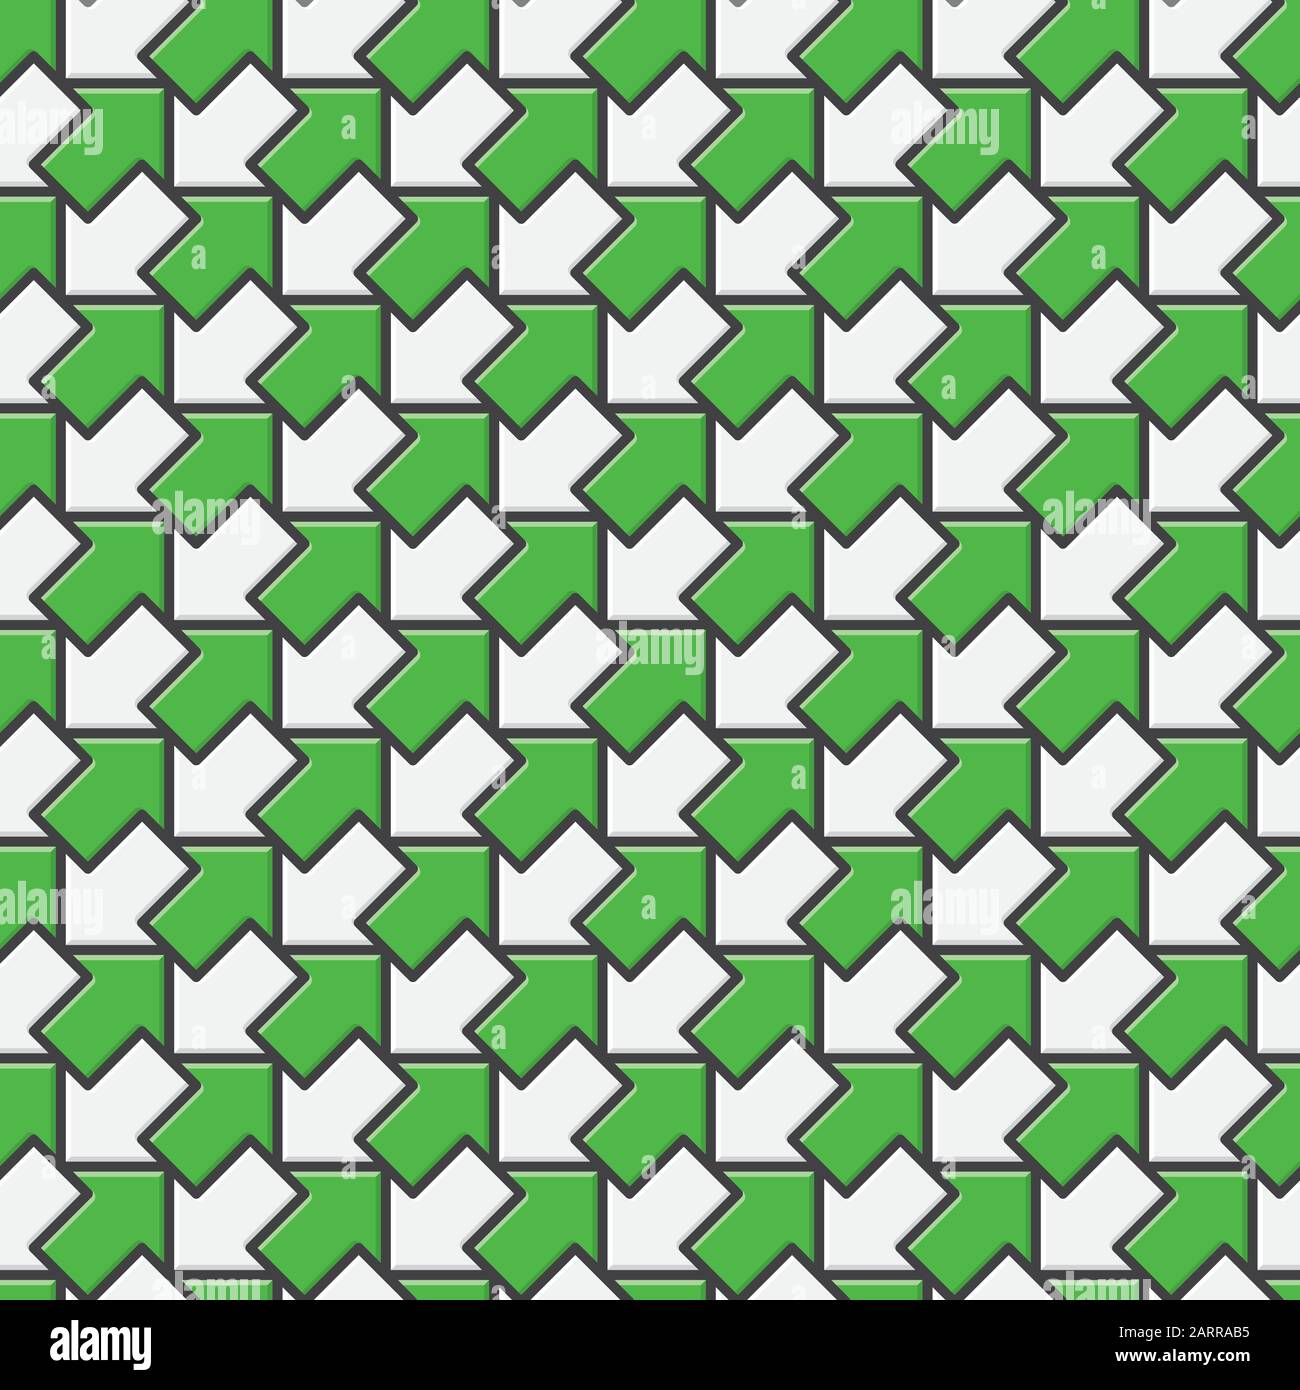 Nahtloses Vektormuster mit grünen und weißen diagonalen Pfeilen in entgegengesetzte Richtungen. Gegensätze und Widersprüche konzepten Hintergrund Stock Vektor